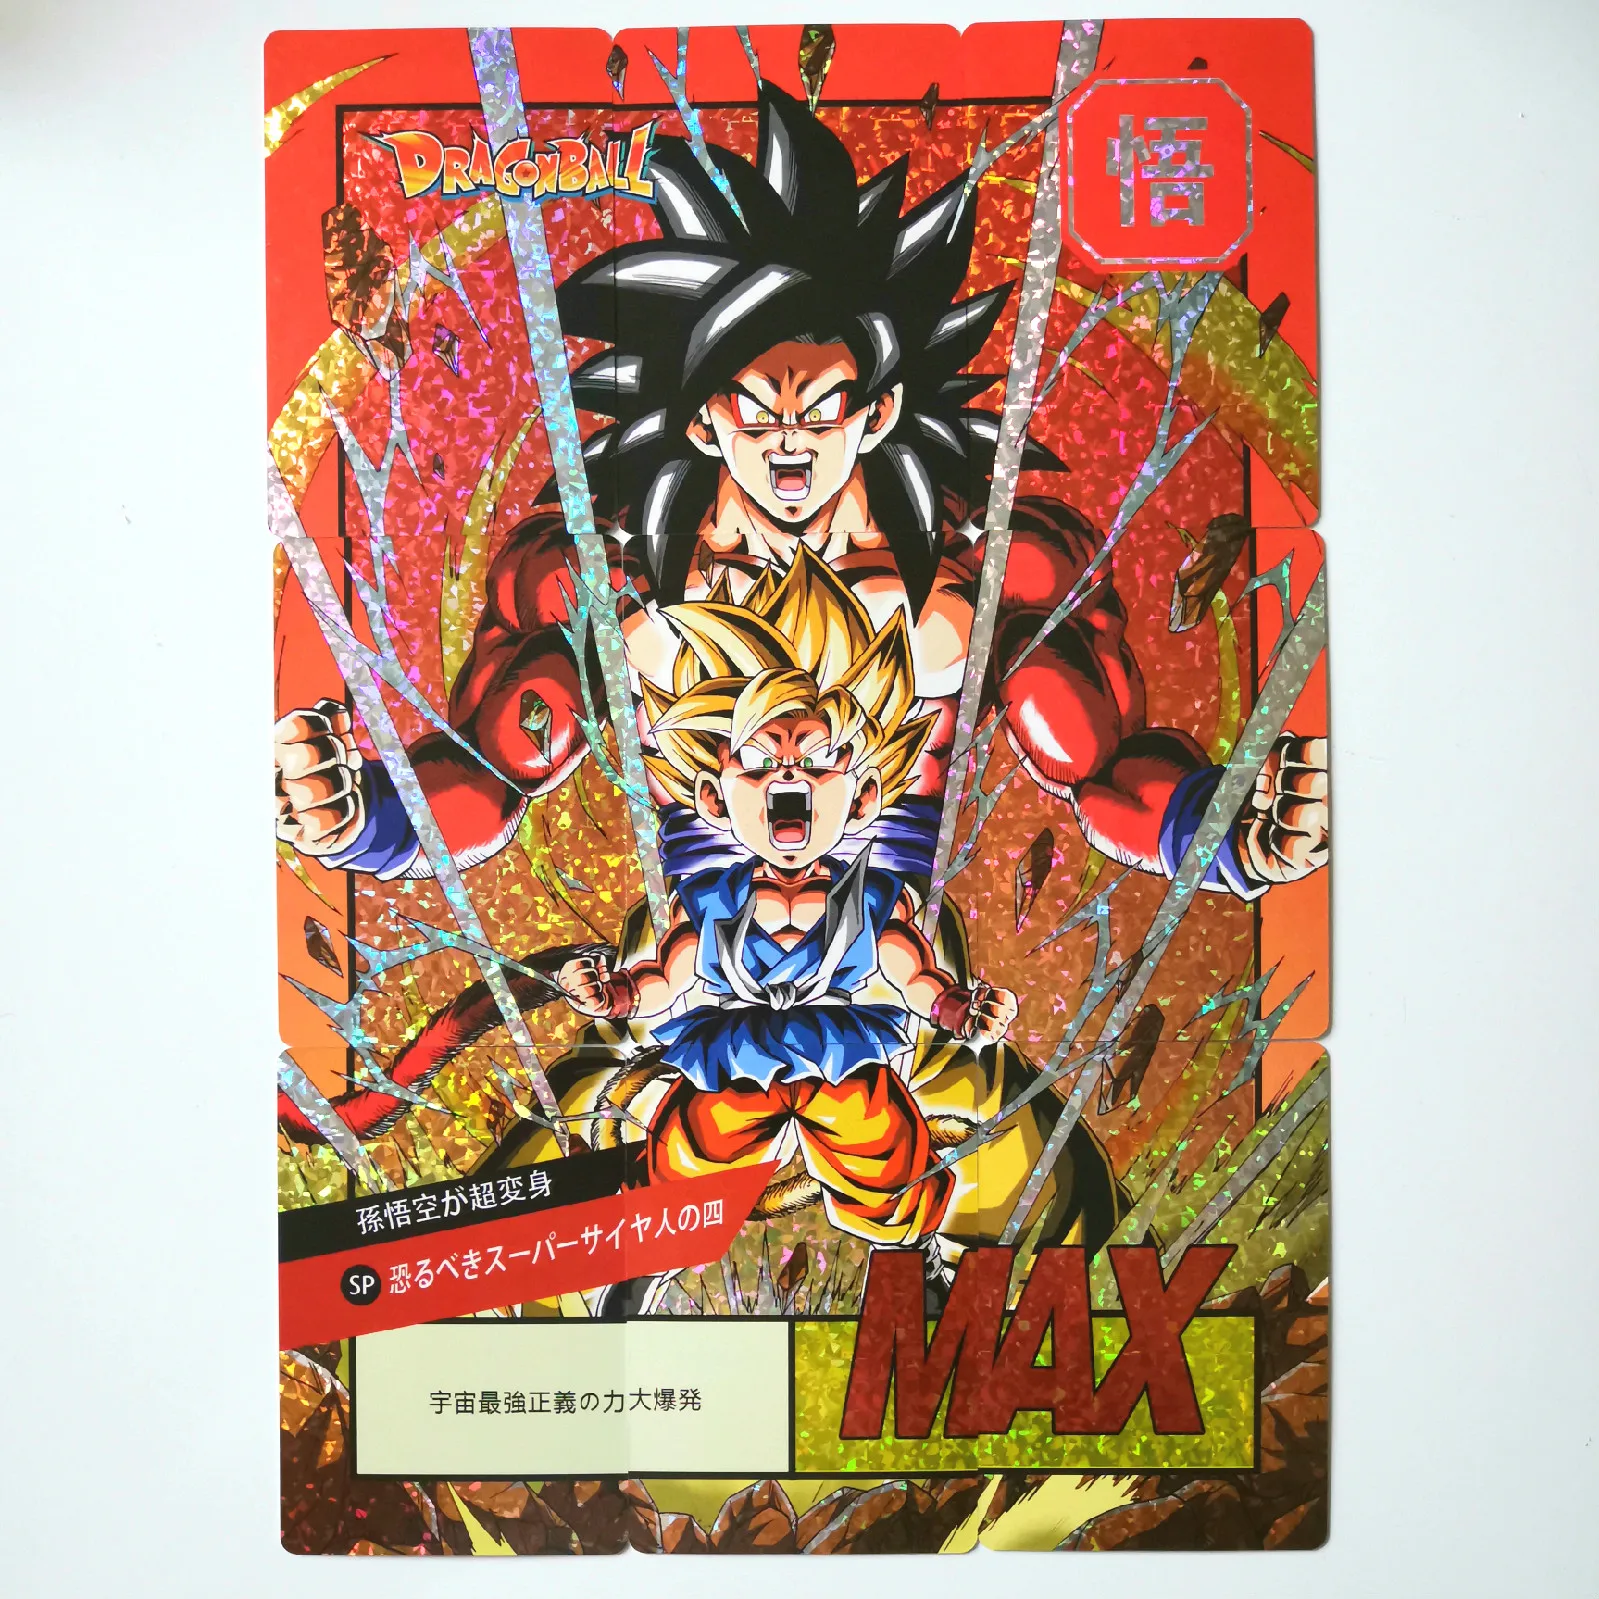 27 шт./компл. супер Dragon Ball-Z Heroes боевой карты Ultra Instinct Гоку Вегета игровая коллекция карт